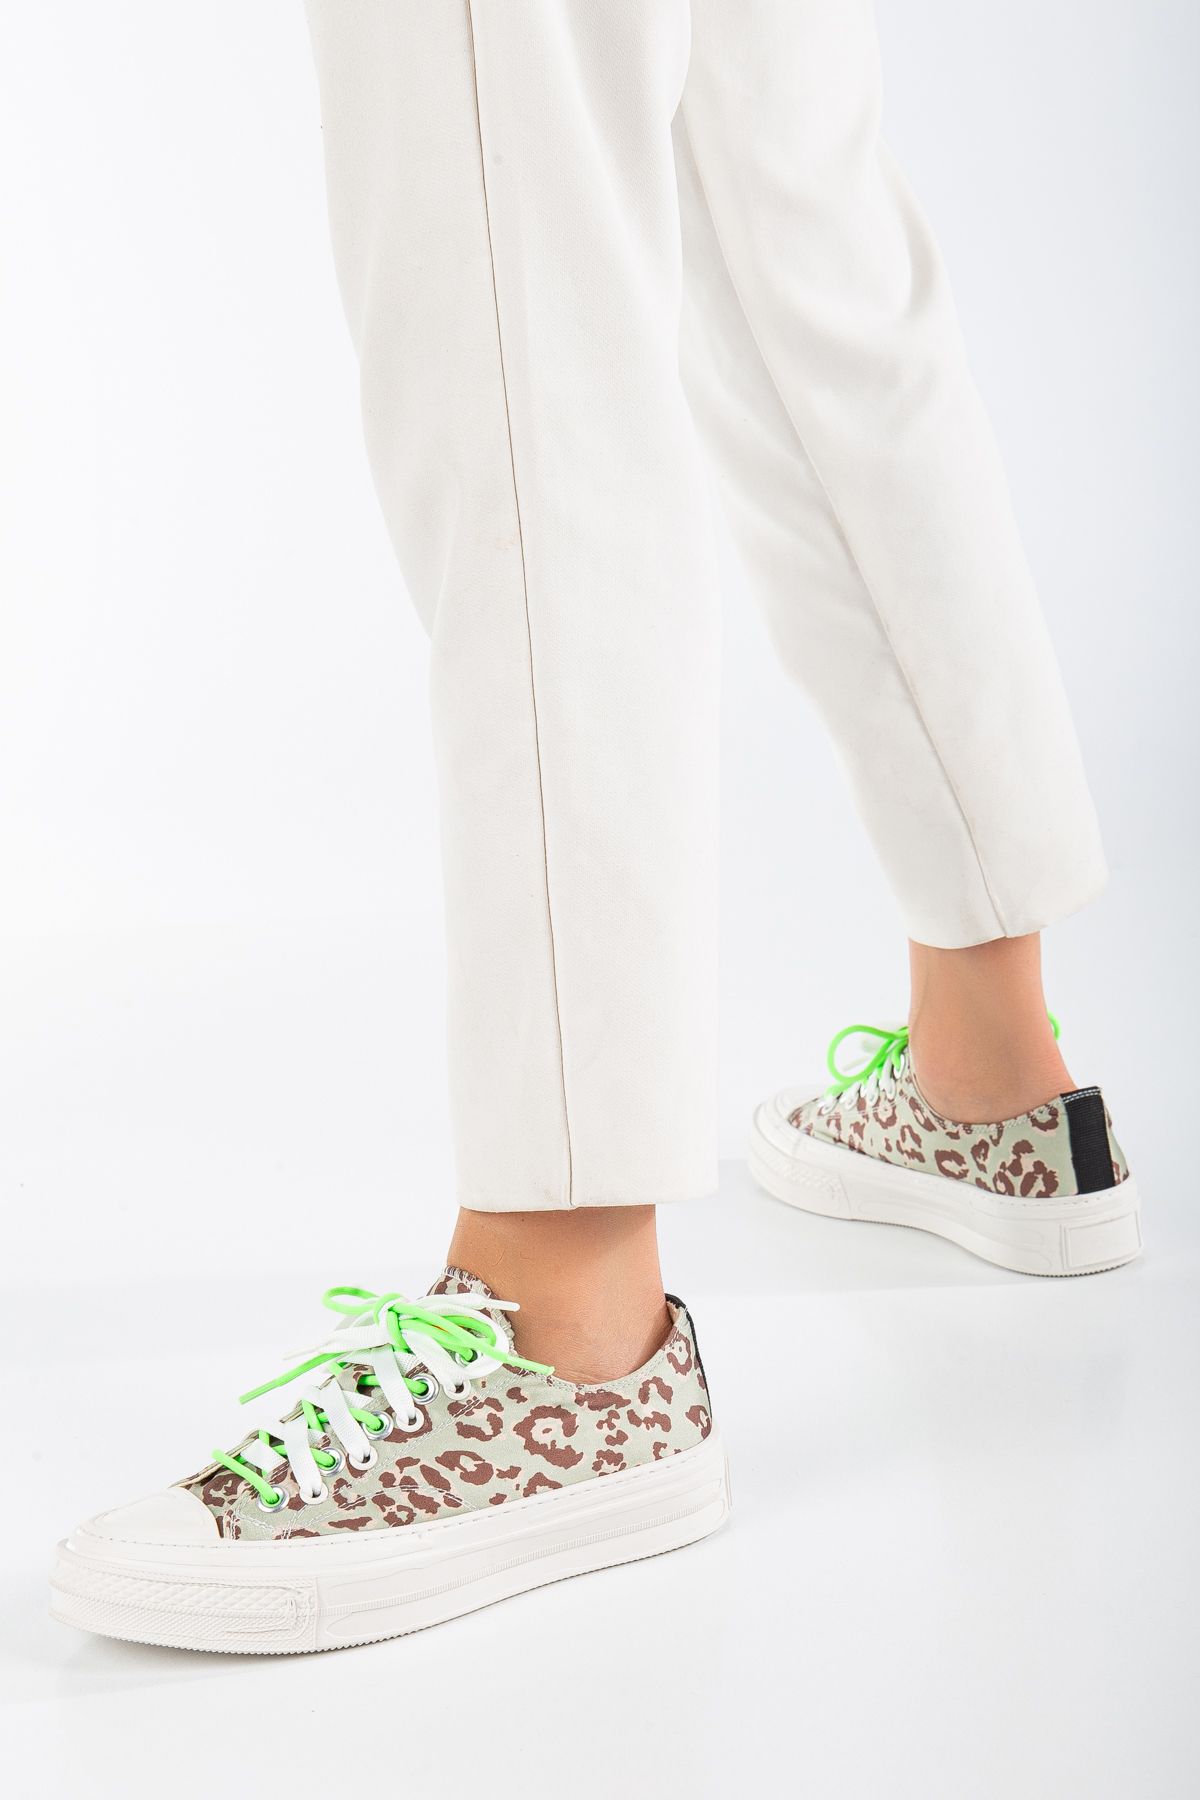 Guja 22K280-2 Leaopar Desenli Yeşil-Beyaz Bağcıklı Kadın Casual Günlük Ayakkabı